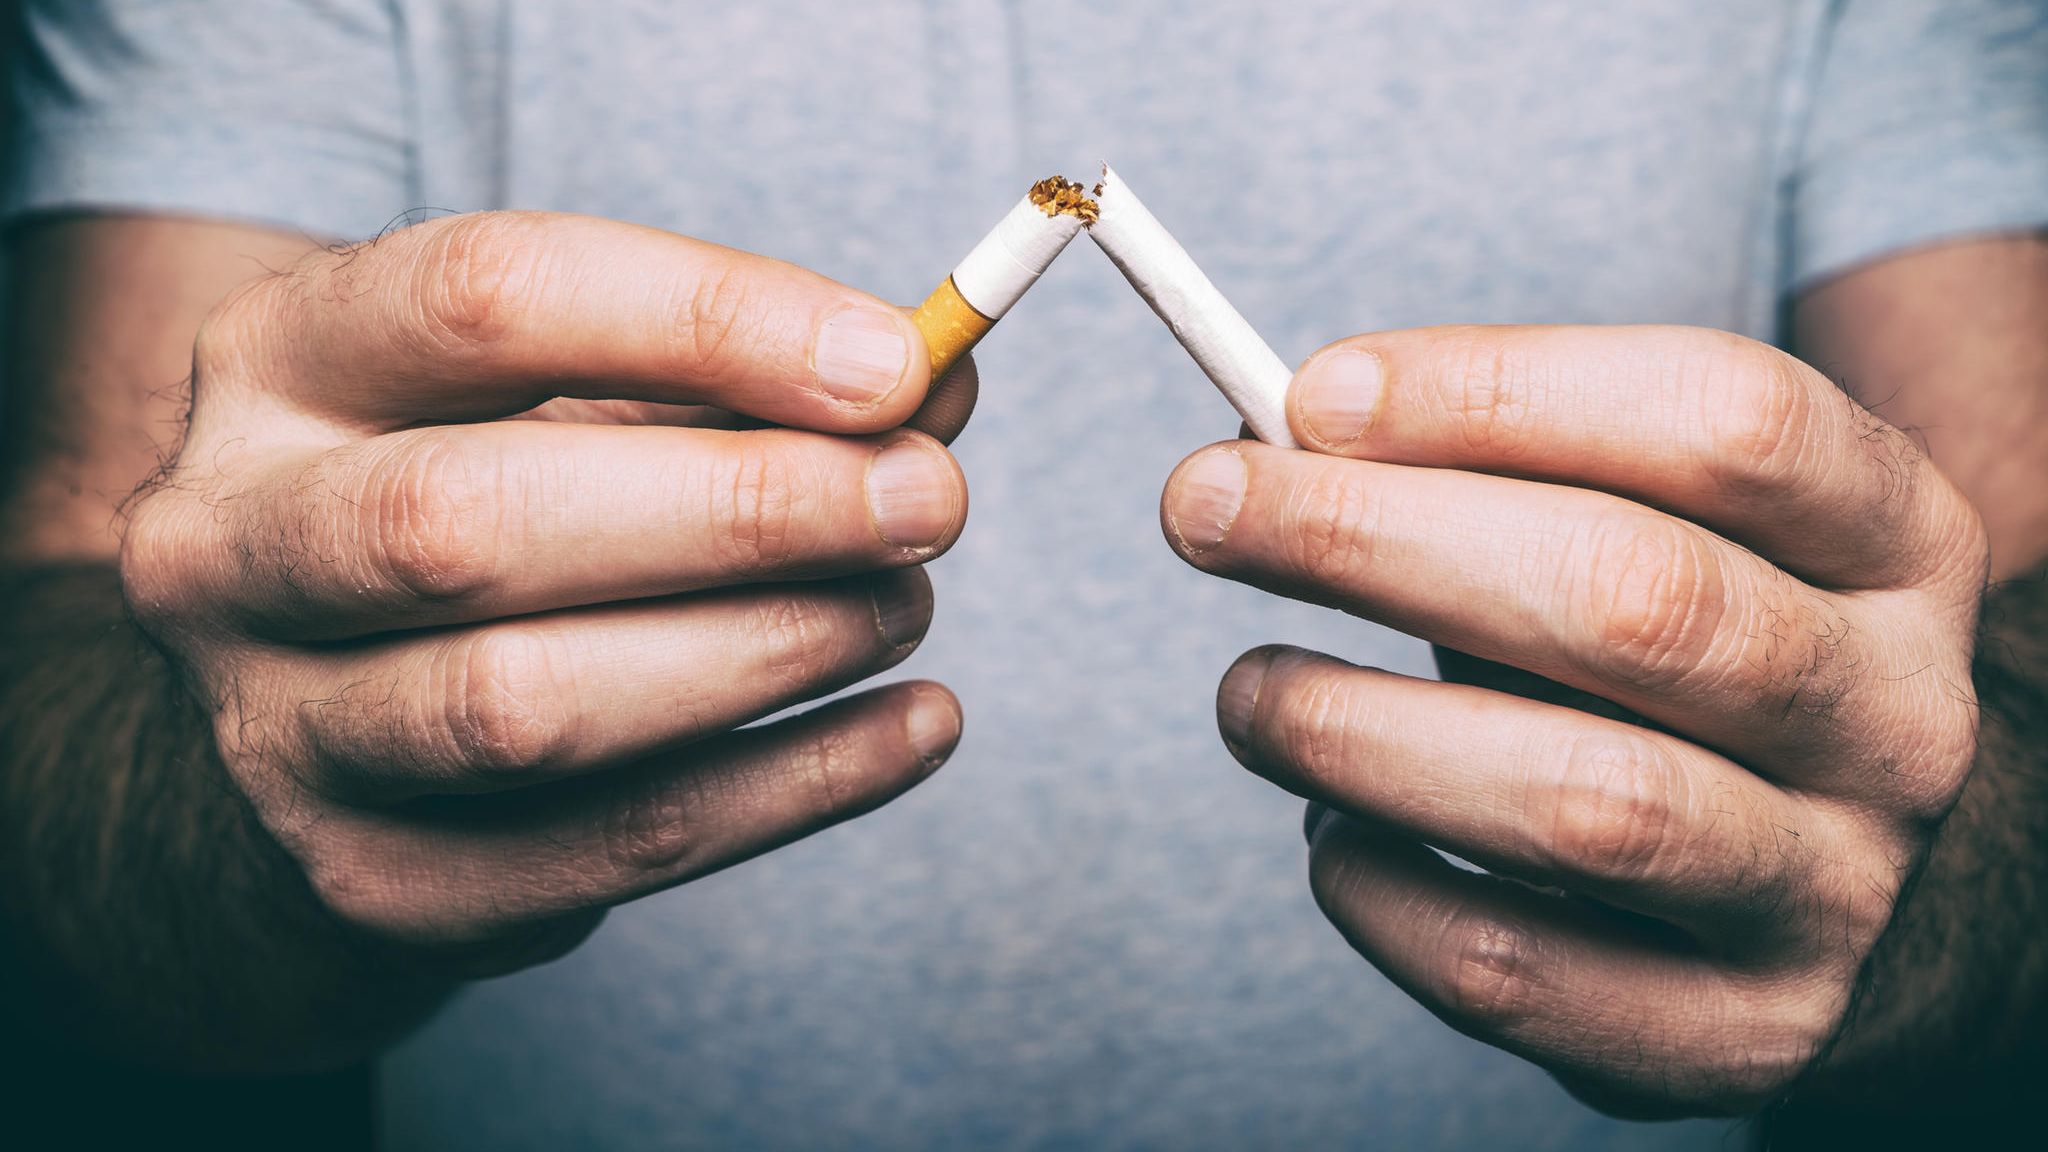 Rauchstopp: E-Zigaretten in Studie häufiger erfolgreich als